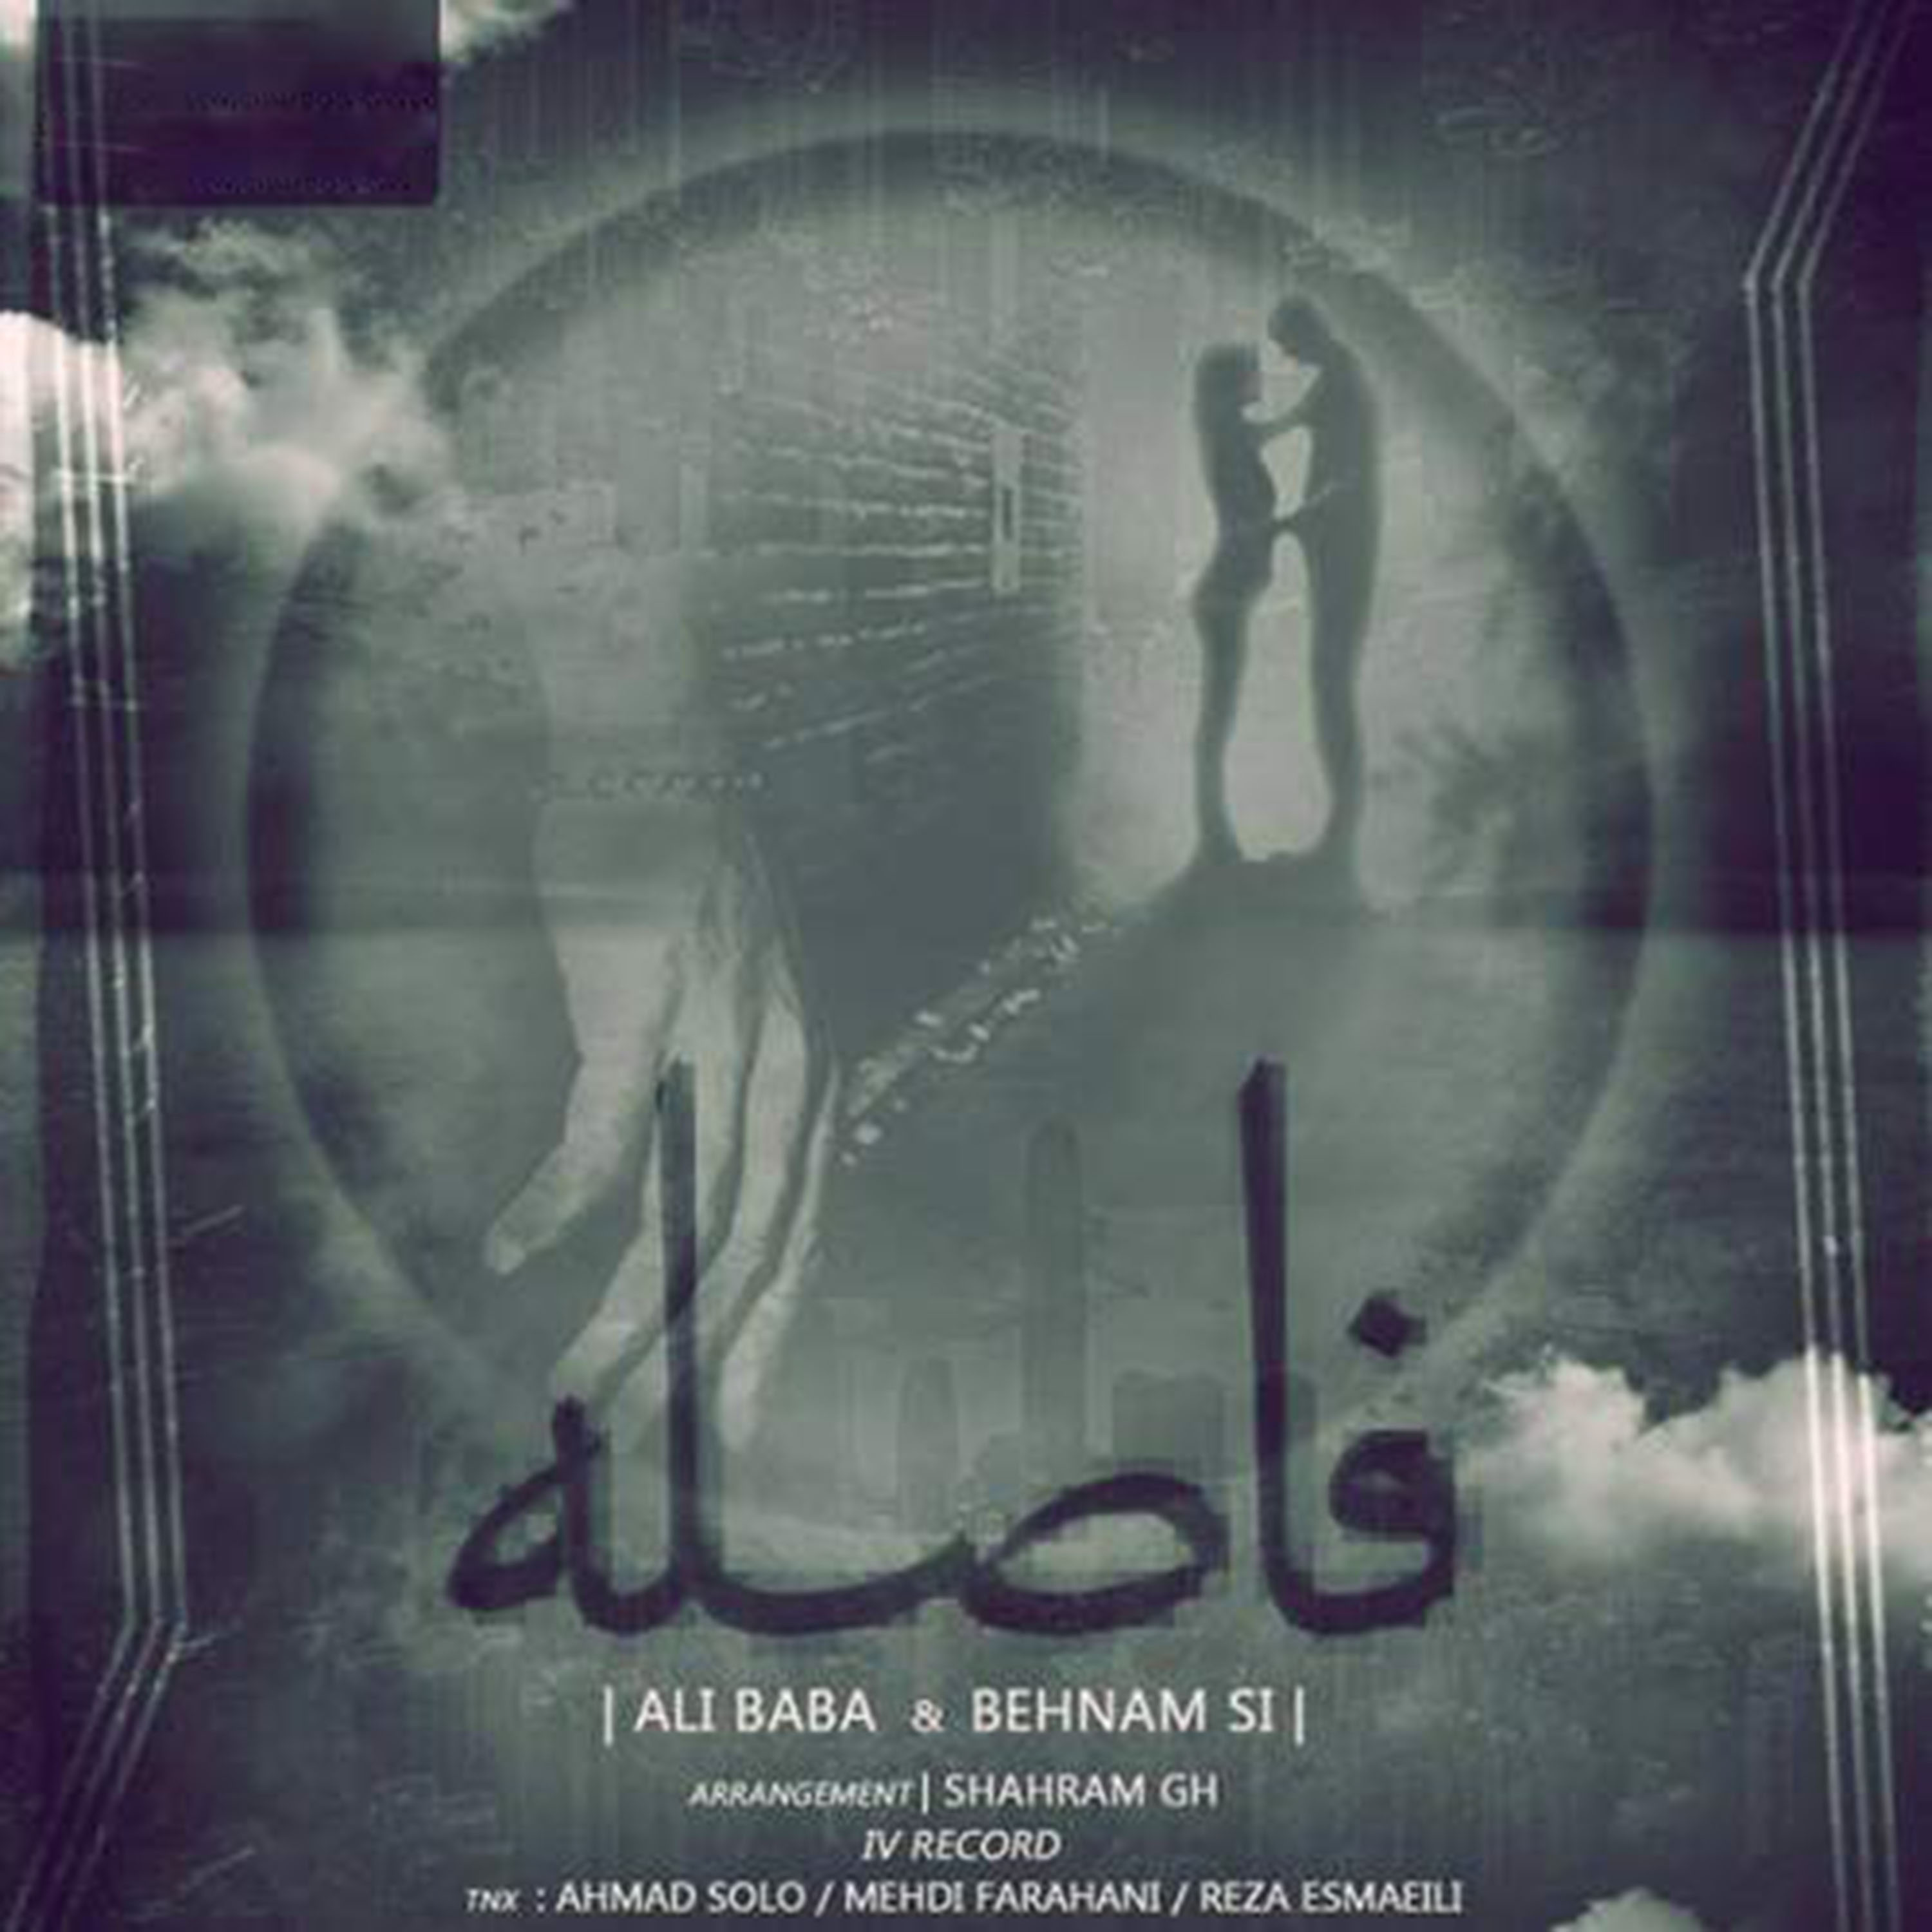  دانلود آهنگ جدید علی بابا - فاصله | Download New Music By Ali Baba & Behnam Si - Fasele